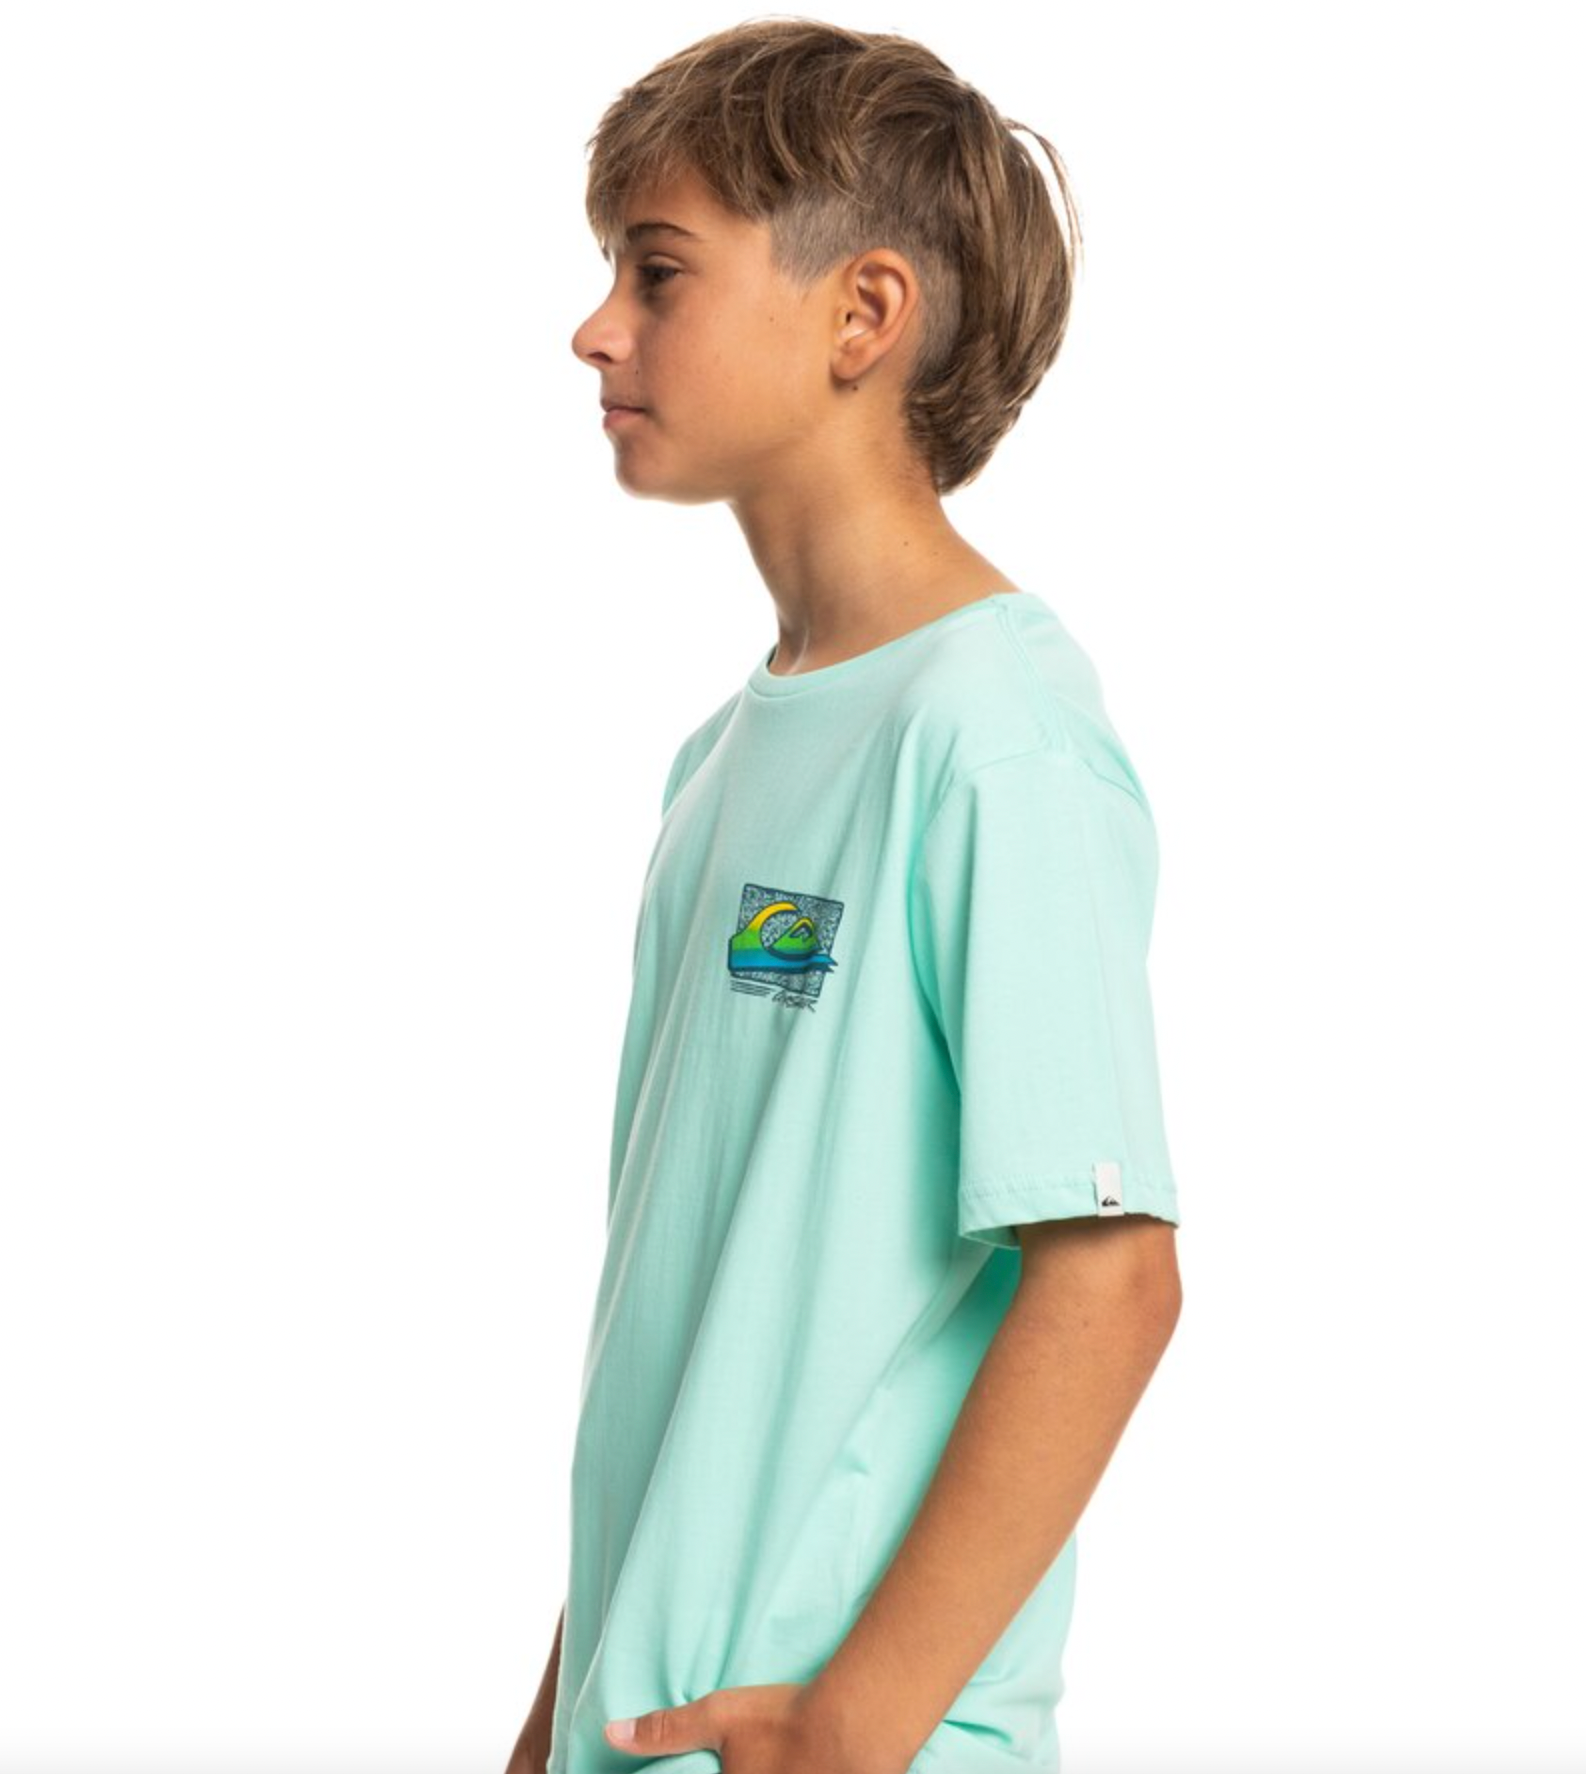 Quiksilver Retro Fade Kids T-Shirt